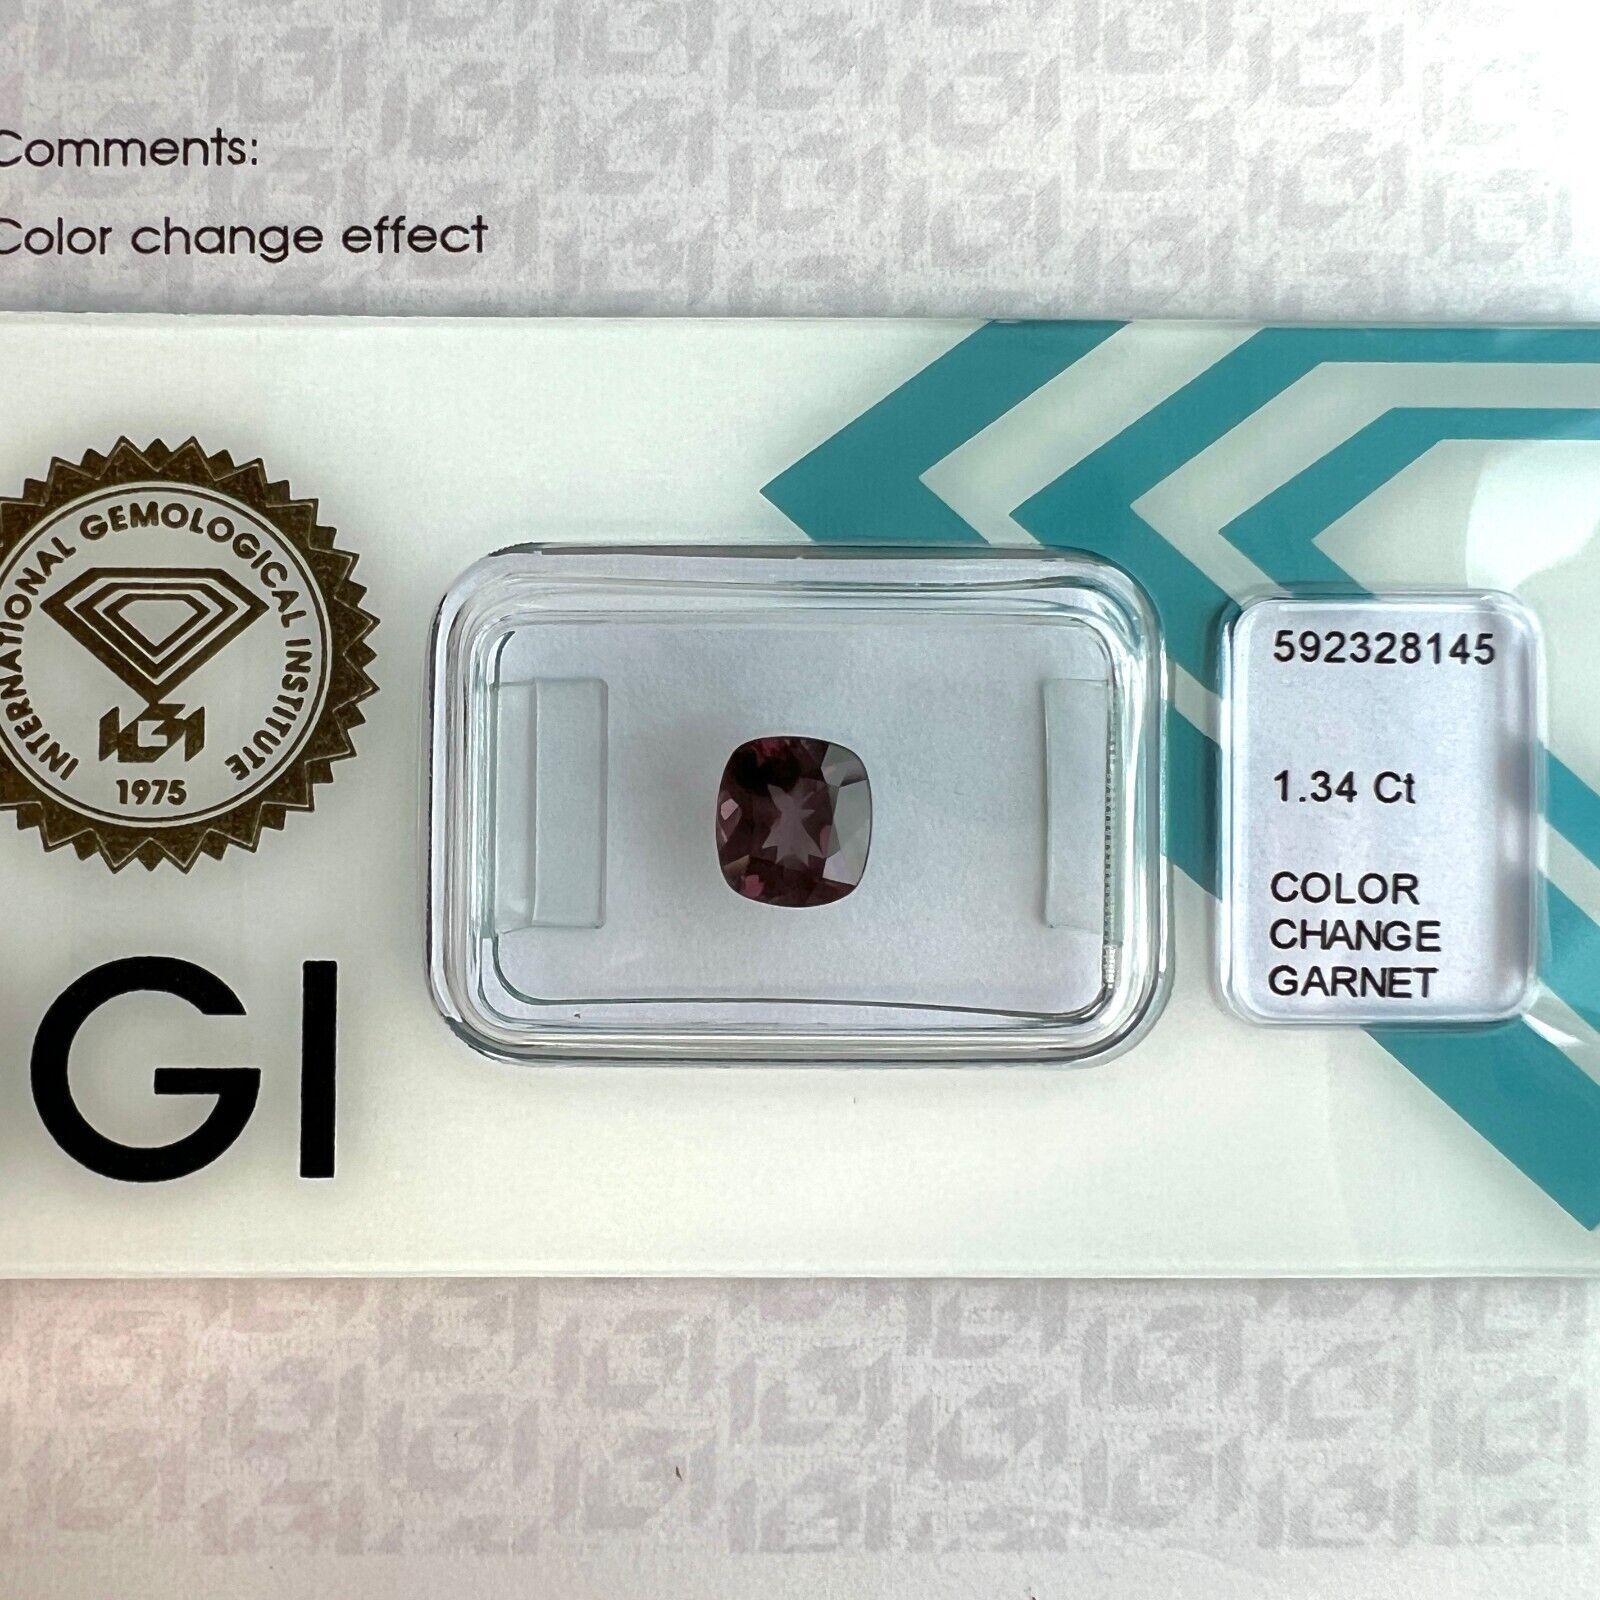 1,34ct Farbwechsel Granat Natürlicher Kissenschliff Seltener IGI zertifizierter Edelstein

Einzigartiger seltener unbehandelter Farbwechsel-Granat-Edelstein.
1,34 Karat unbehandelter Granat mit einem seltenen Farbwechsel-Effekt. Die Farbe ändert